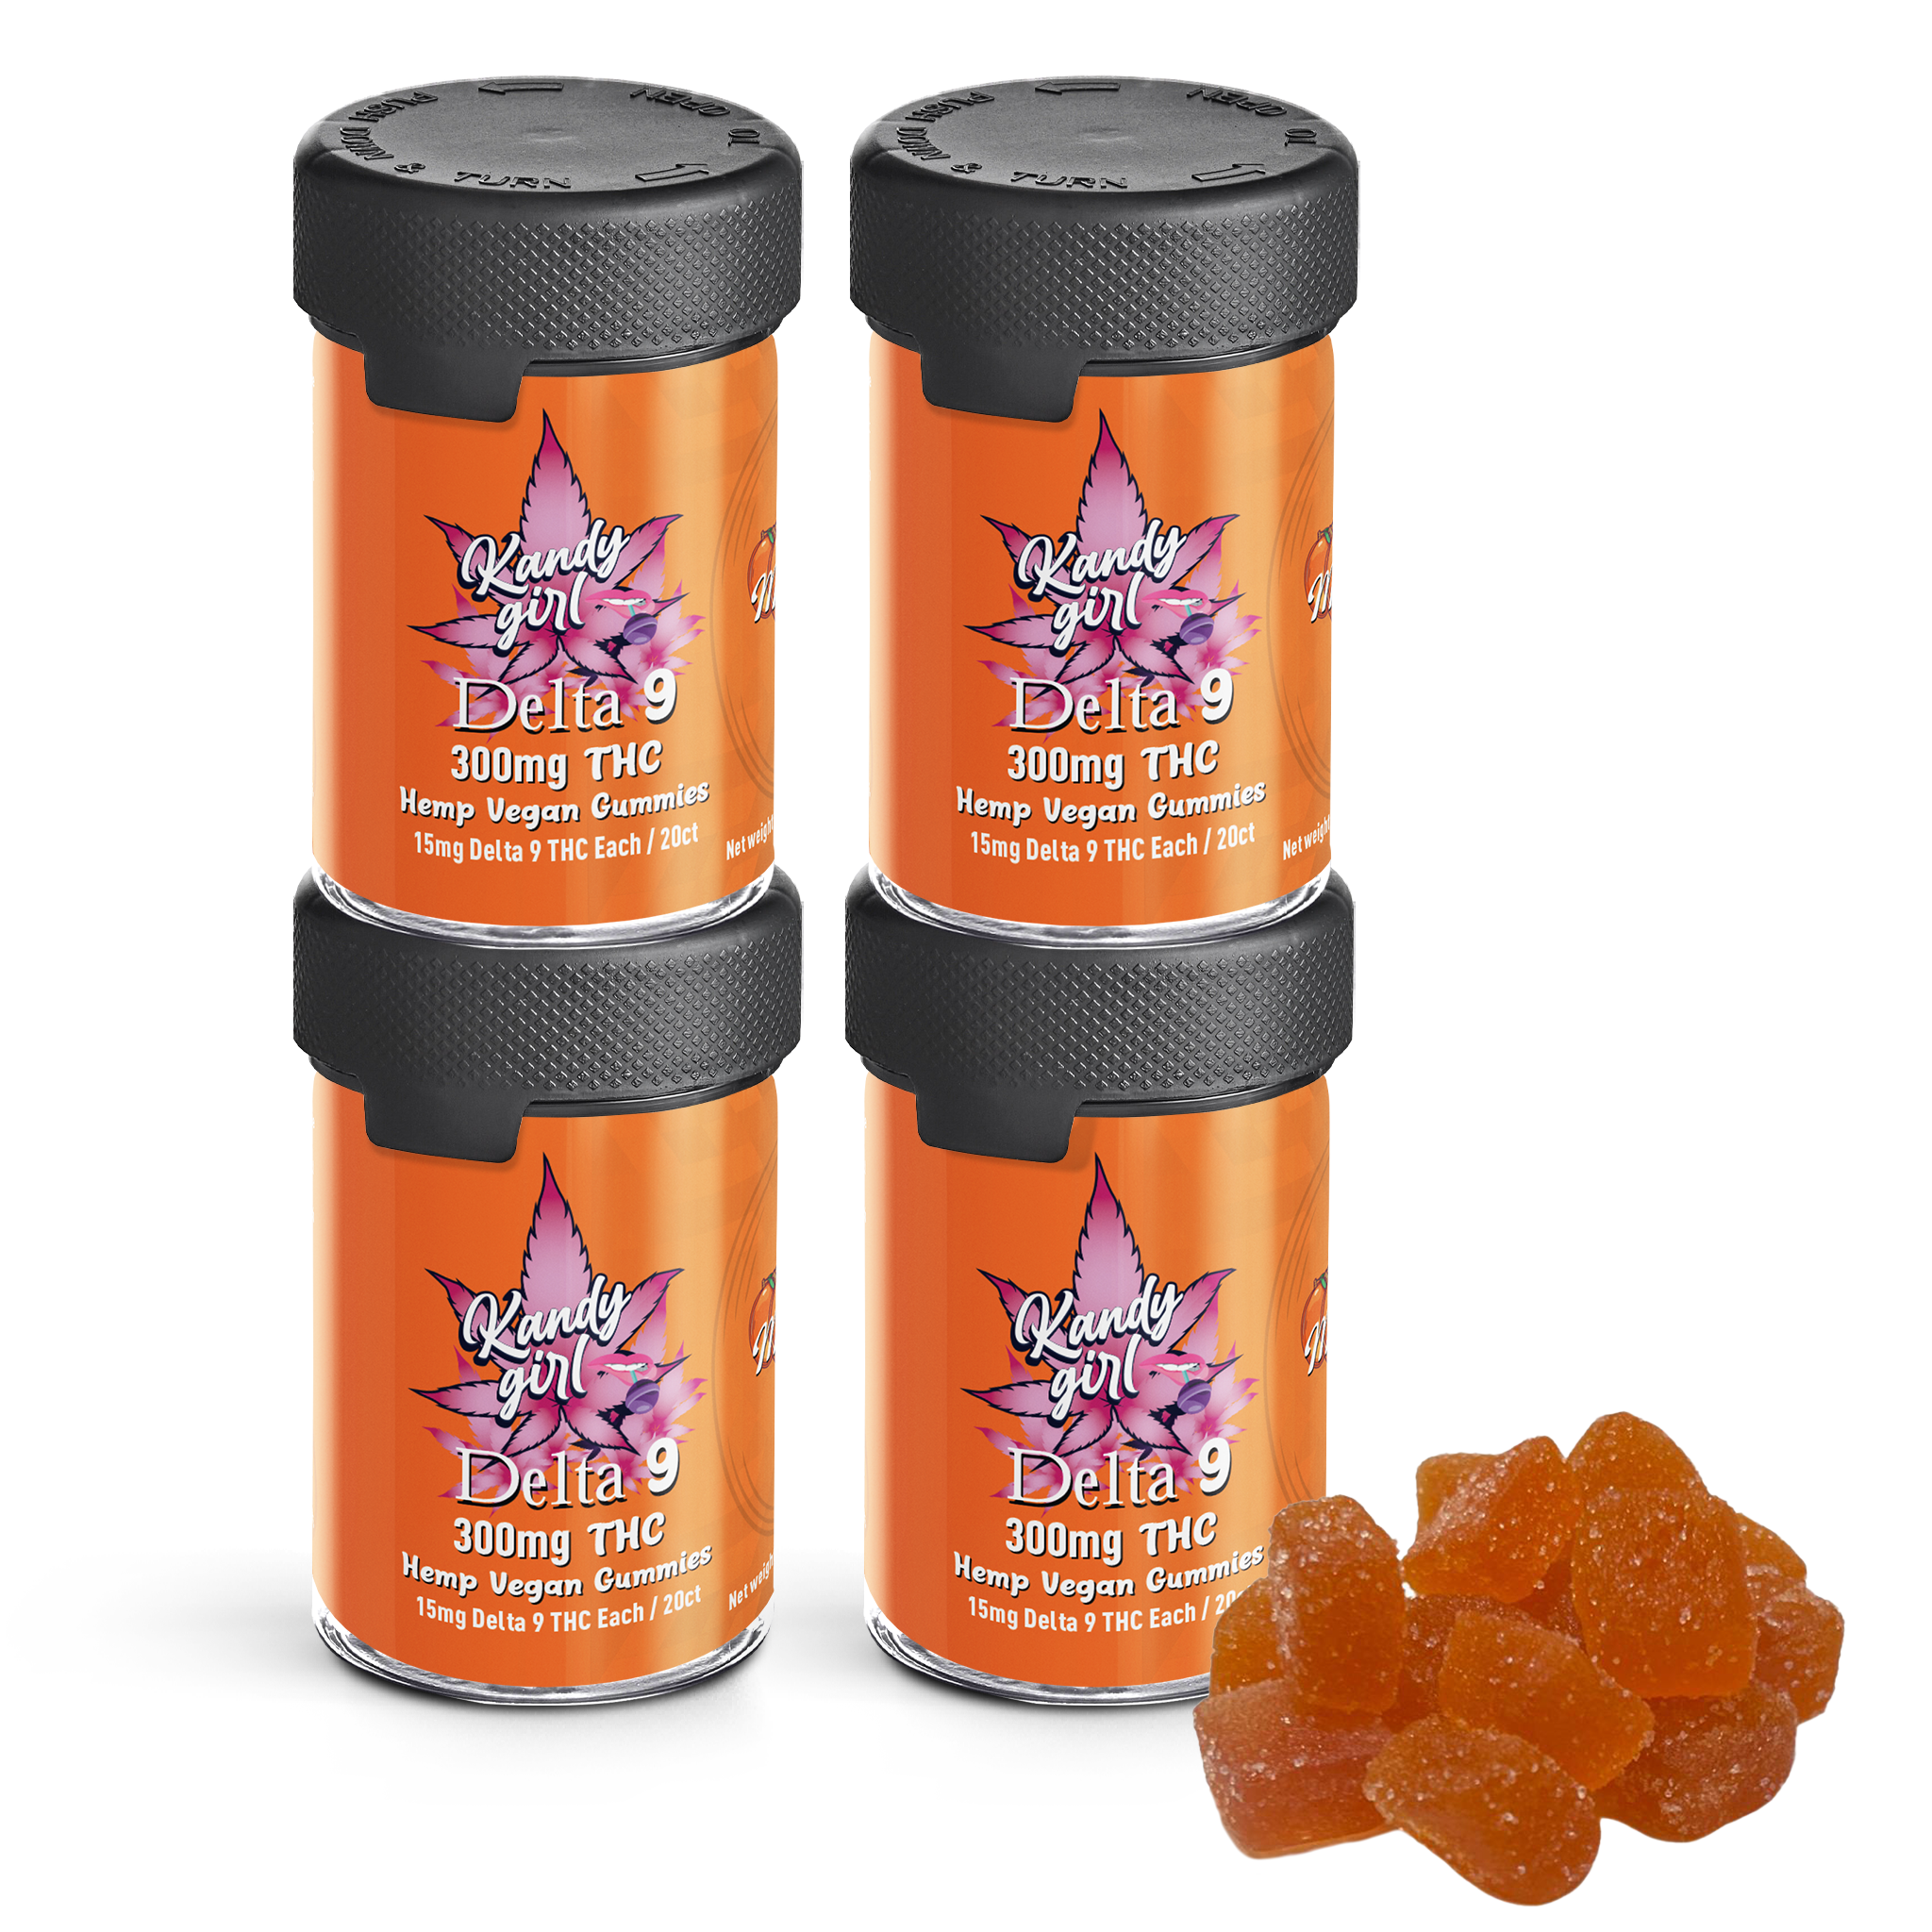 Delta 9 THC Gummies Orange - Four Bottle Bundle (1200mg THC Total)